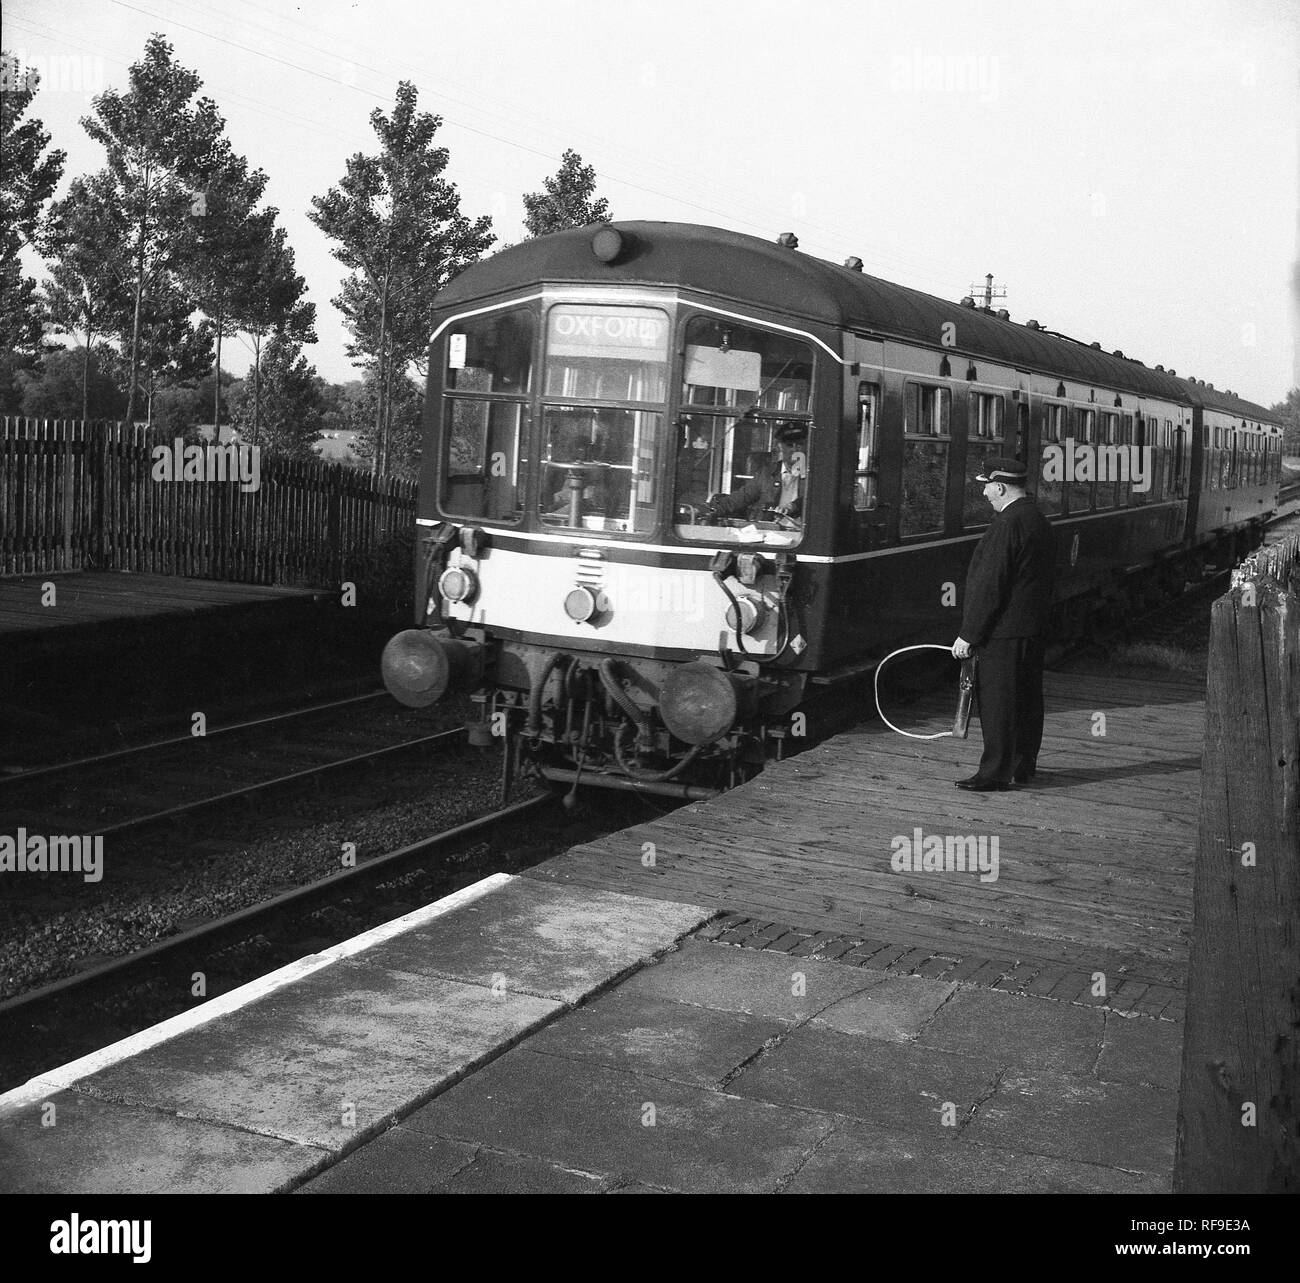 Settanta i treni diesel provenienti in una stazione ferroviaria con una stazione di attesa guard in piedi sul legno parte anteriore platform tenendo un attrezzo metallico, Inghilterra, Regno Unito. Foto Stock